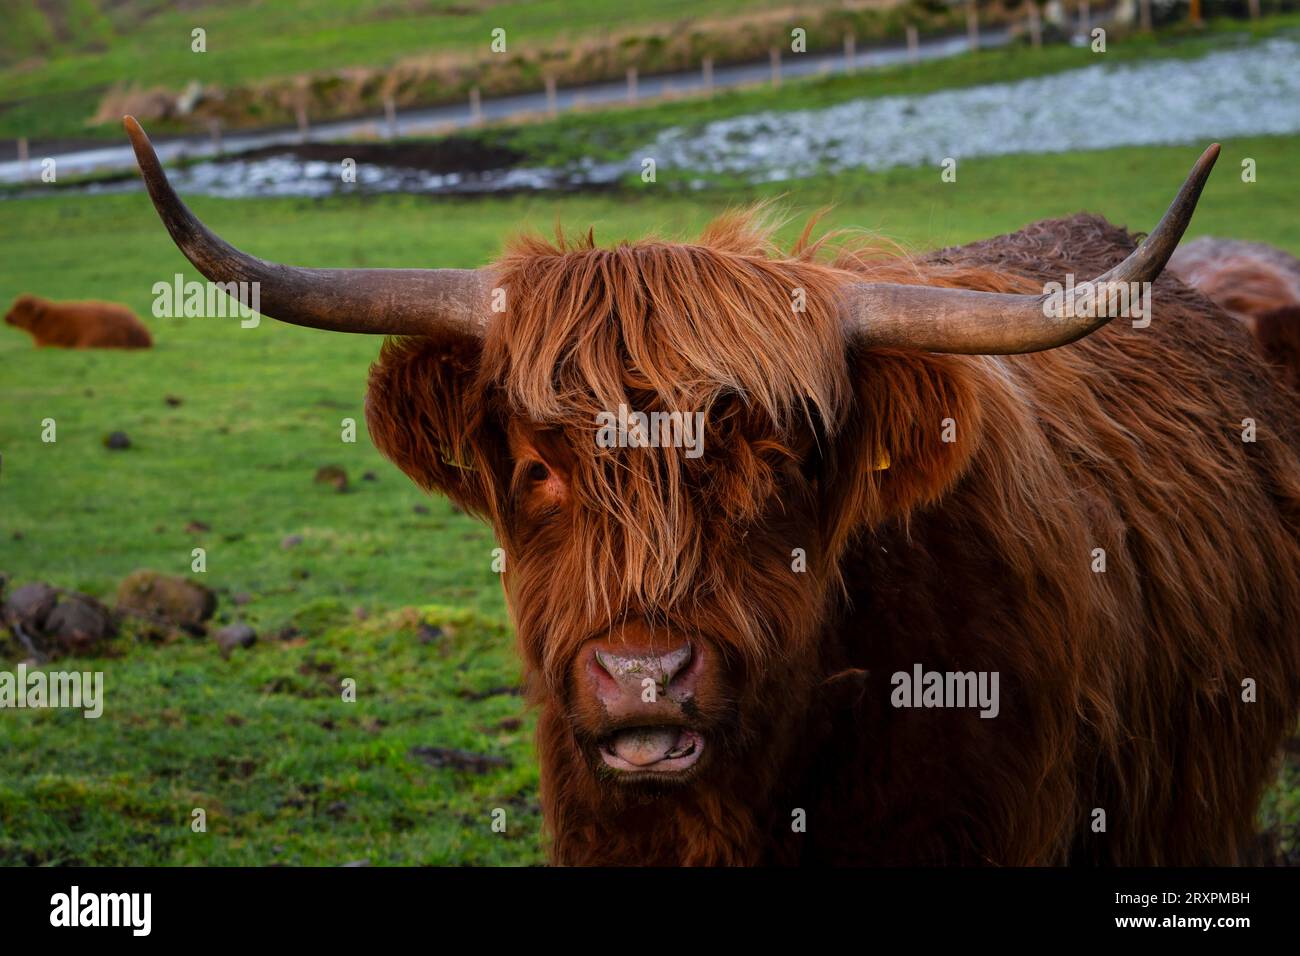 Une vache des Highlands regardant directement la caméra. Prise à Inverness en Écosse. Heelan Coo. Banque D'Images